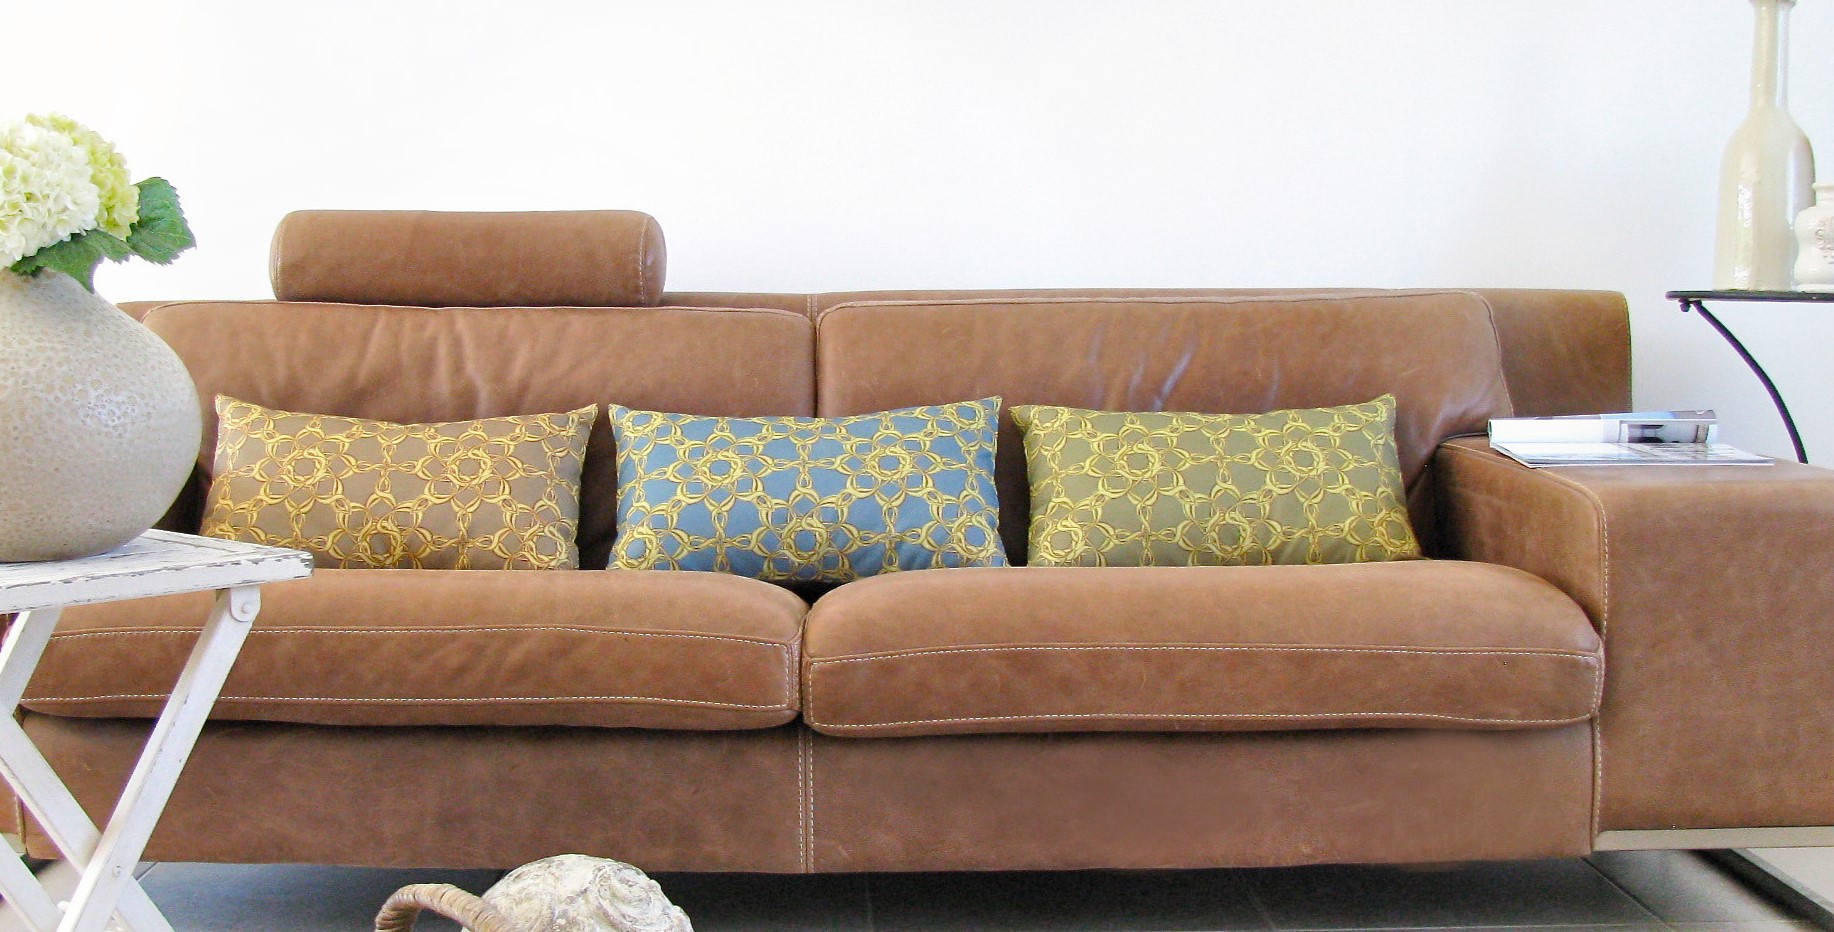 При выборе дивана нужно обращать внимание на качество обивки